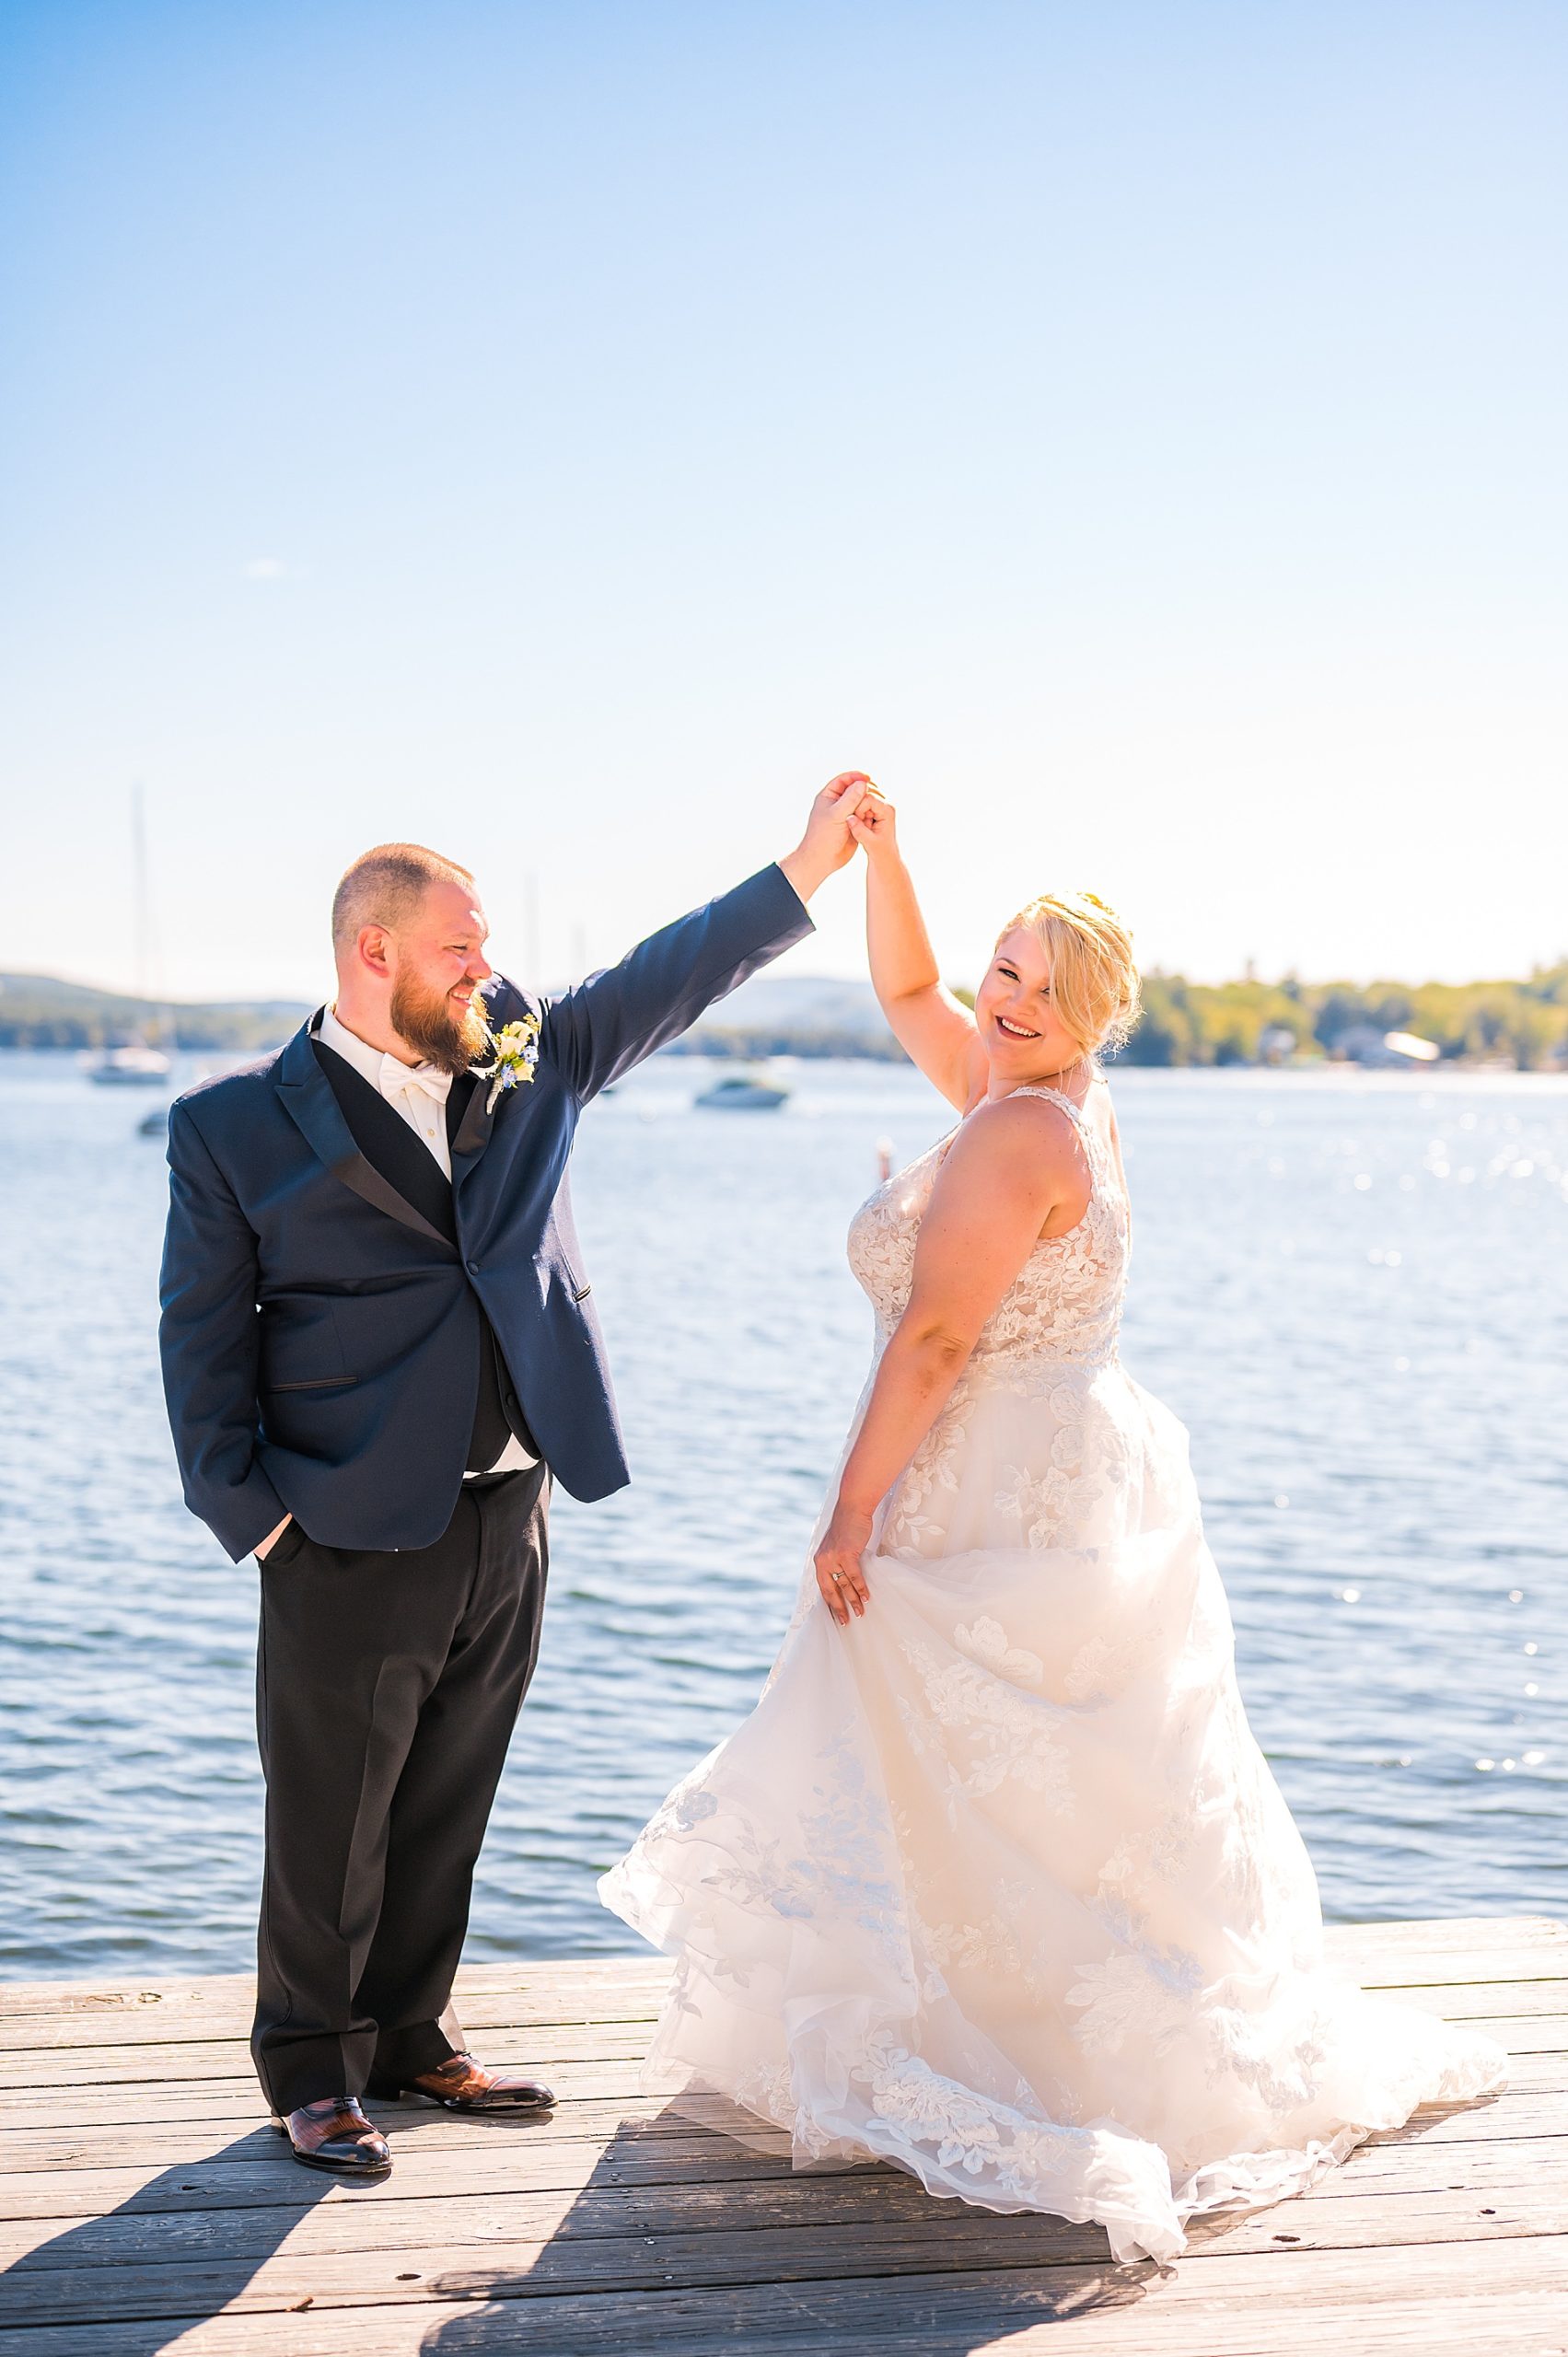 newlyweds dance on boat dock